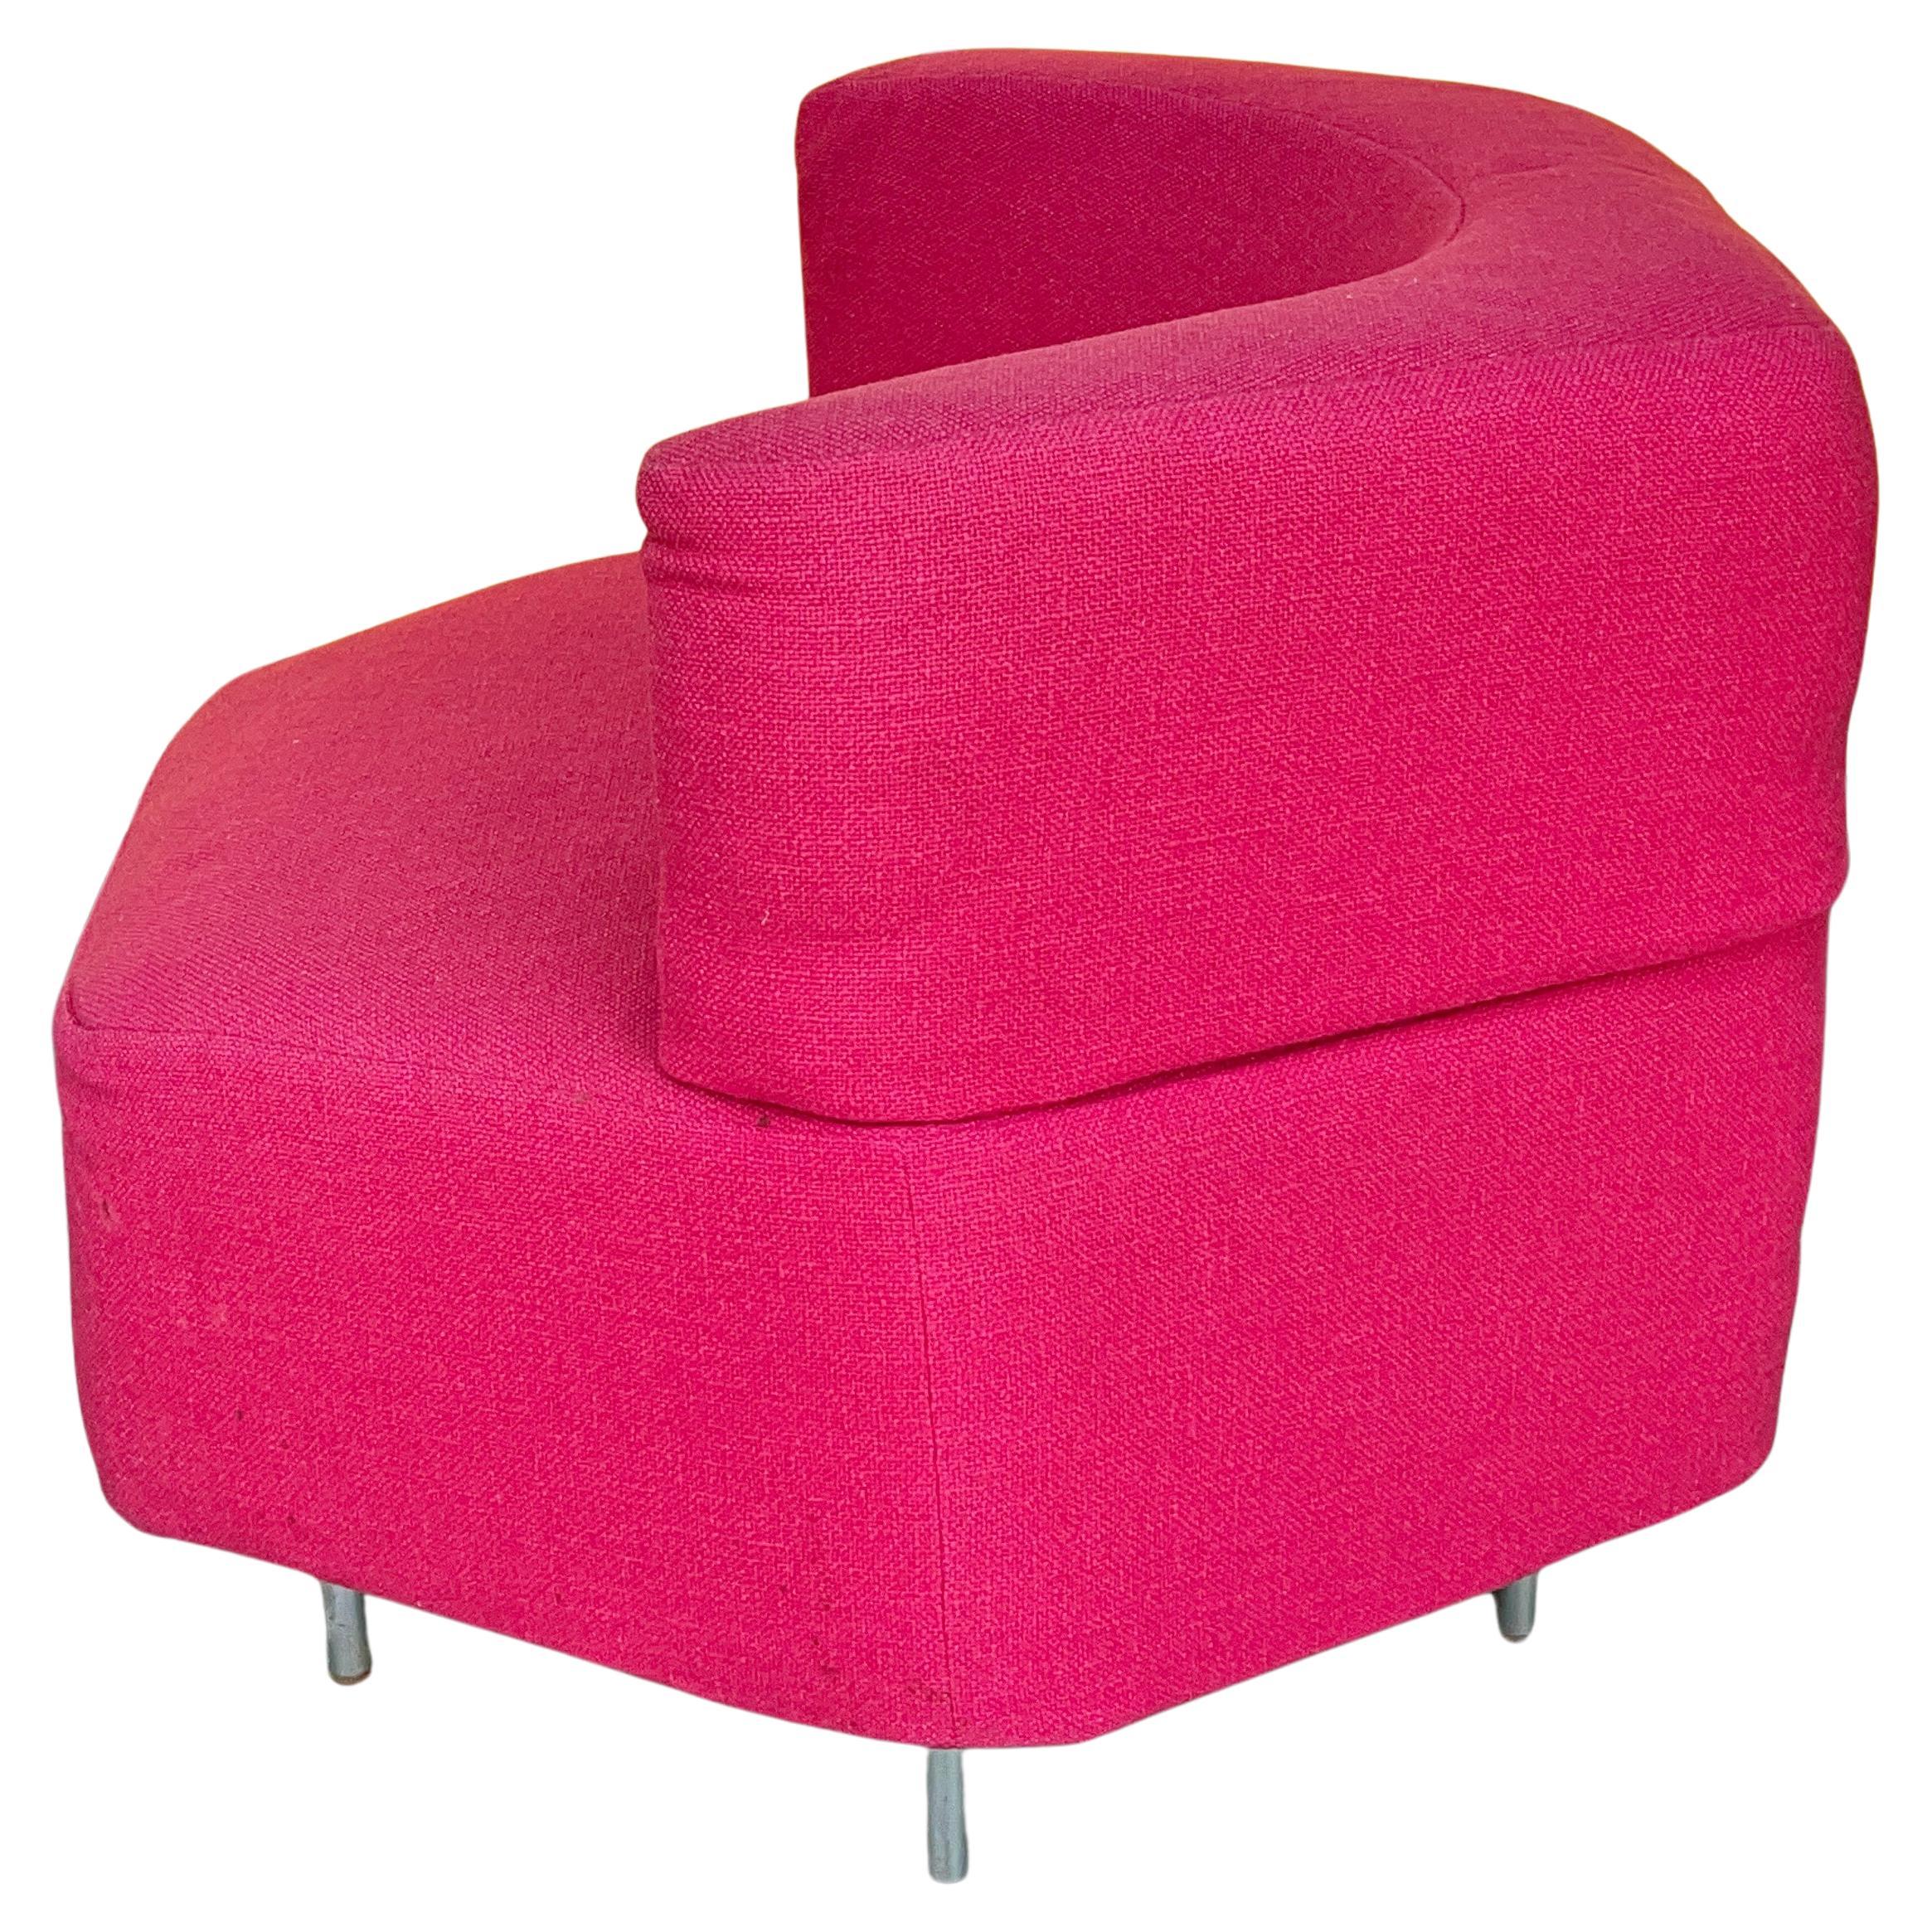 Harvey Probber Hexabloc Chair